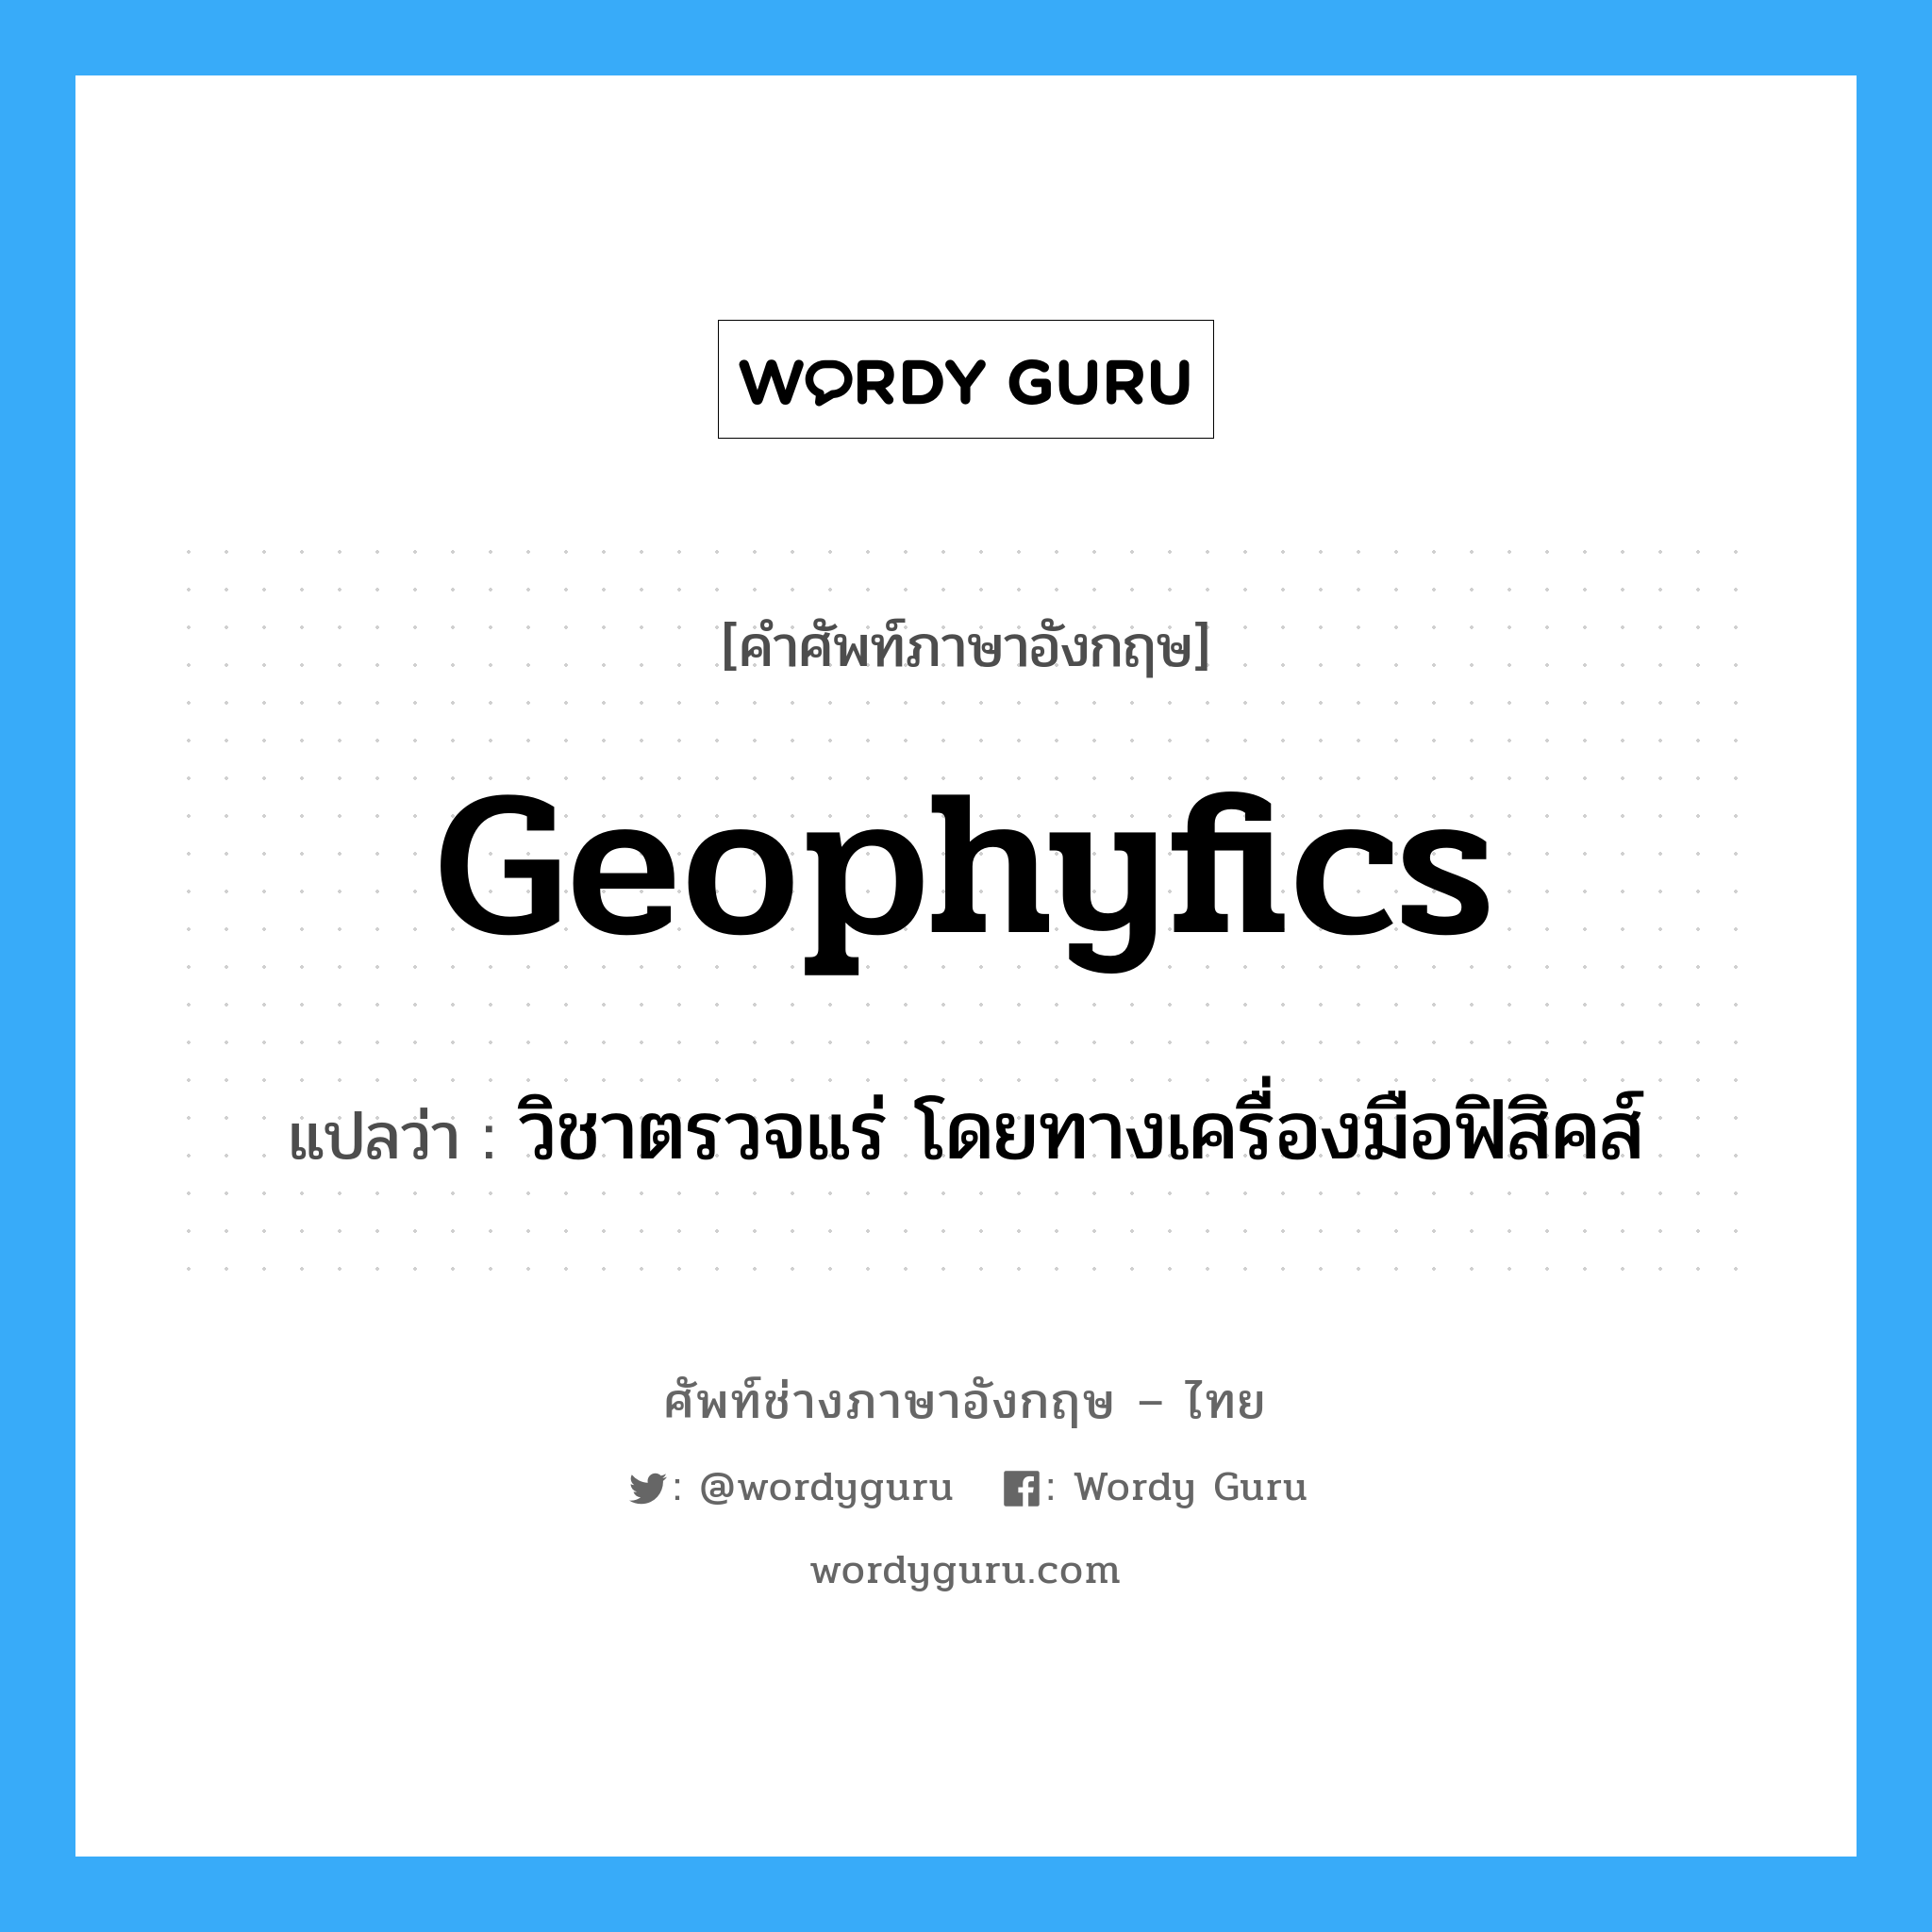 geophyfics แปลว่า?, คำศัพท์ช่างภาษาอังกฤษ - ไทย geophyfics คำศัพท์ภาษาอังกฤษ geophyfics แปลว่า วิชาตรวจแร่ โดยทางเครื่องมือฟิสิคส์